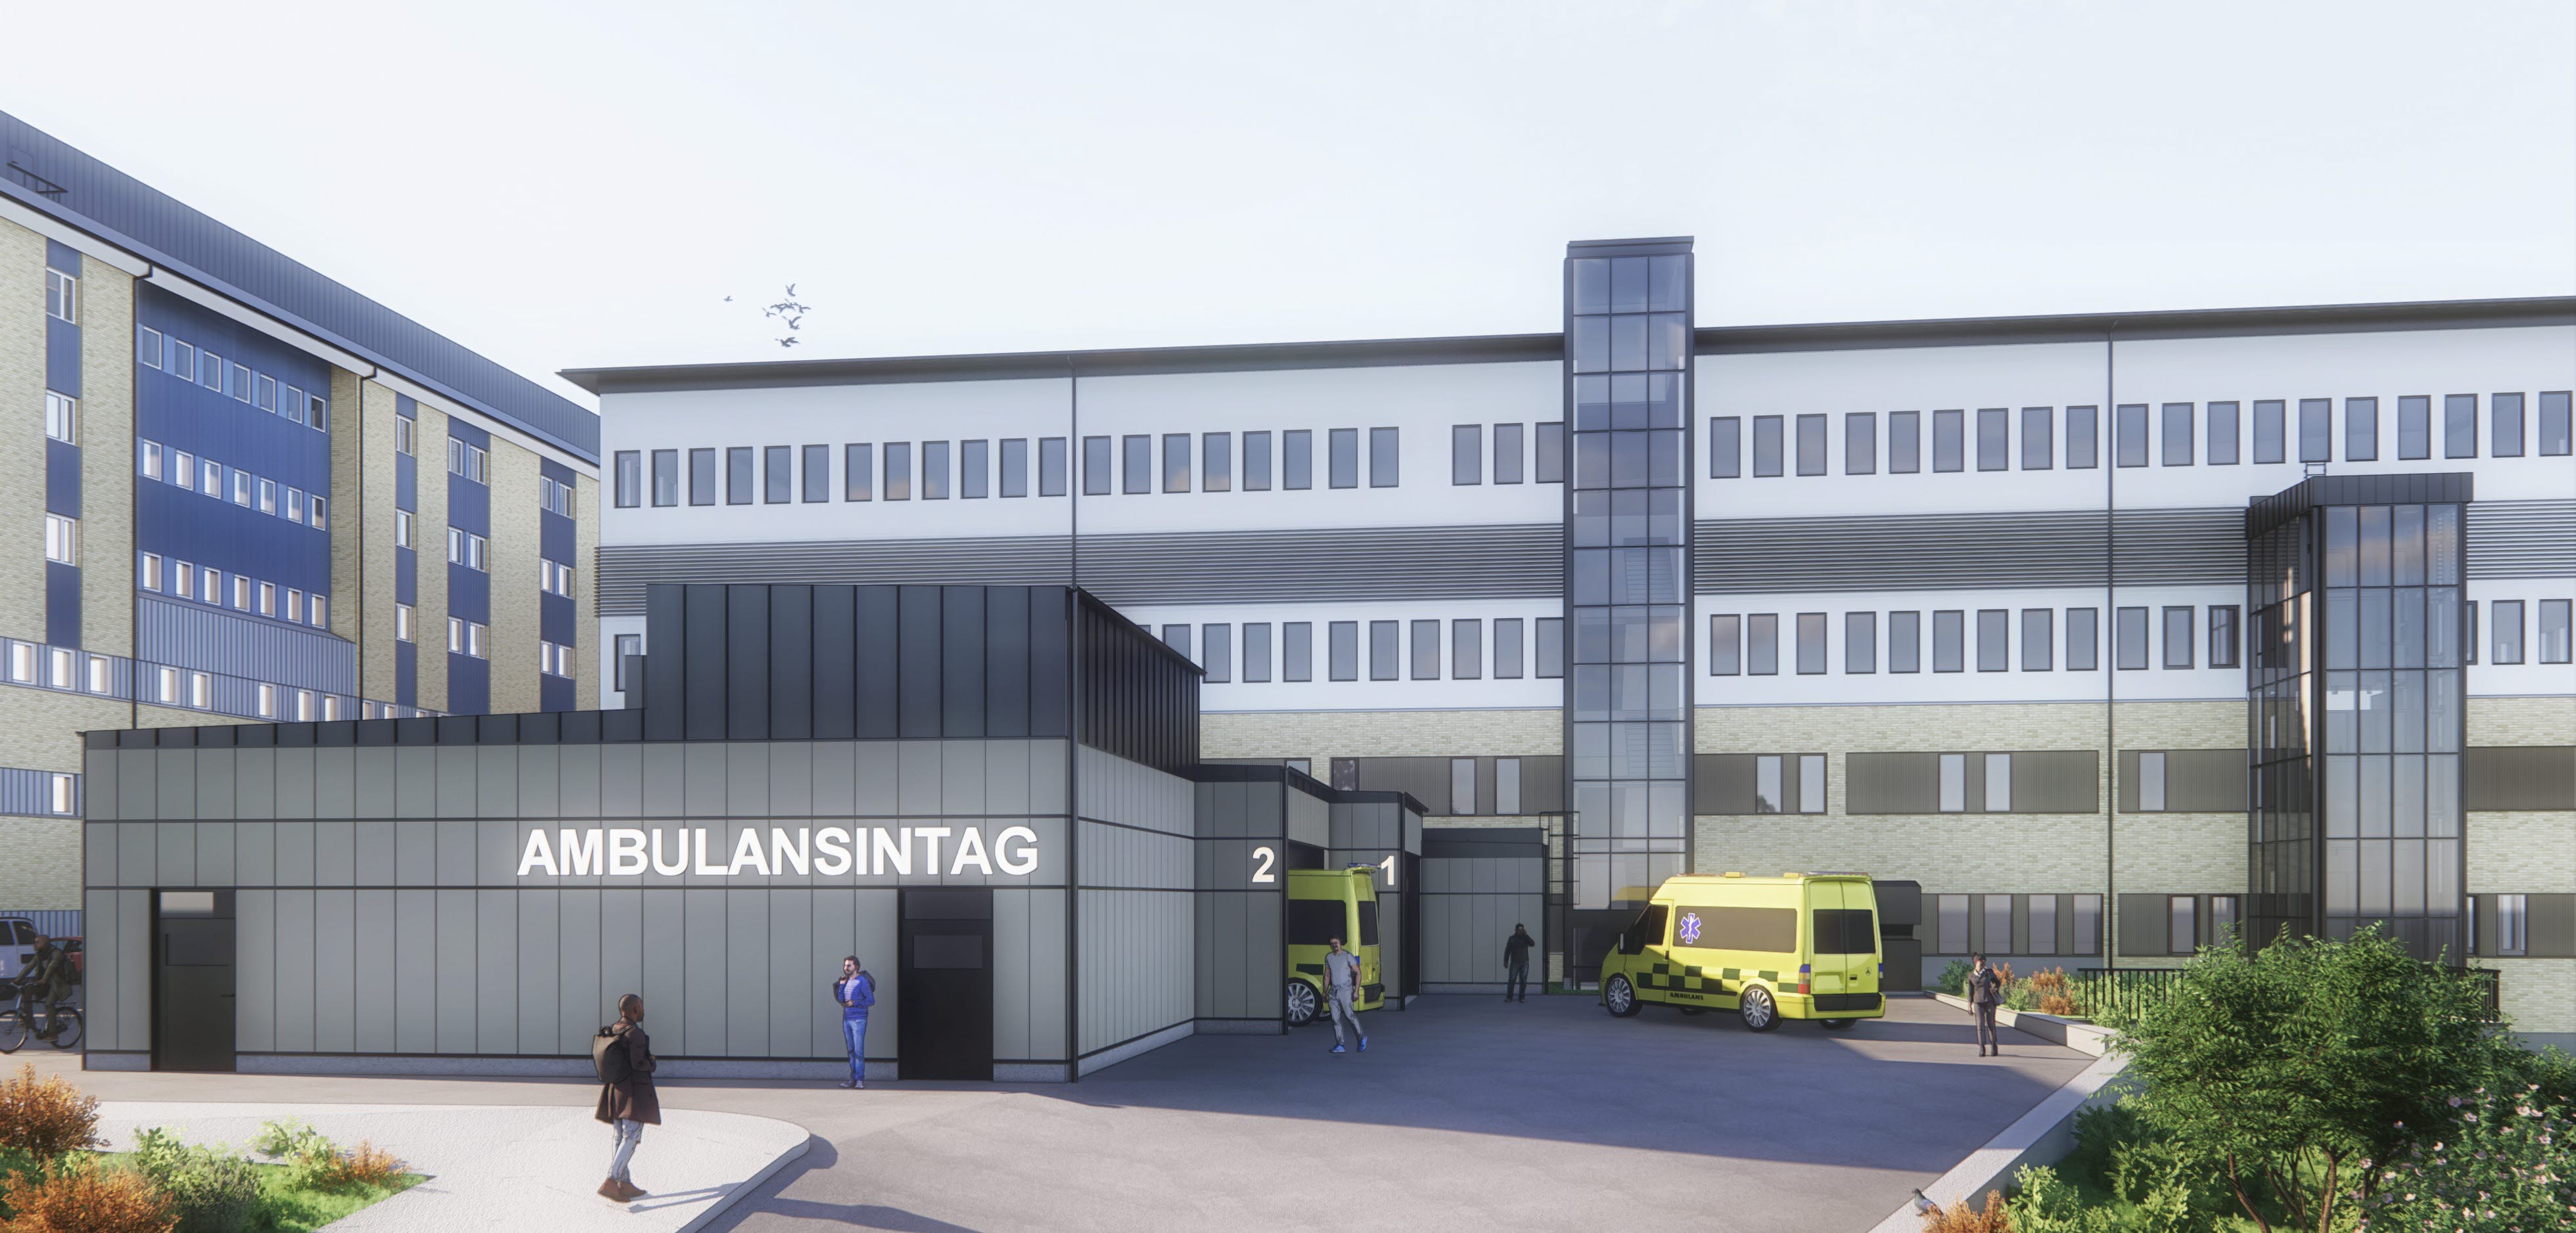 Arkitektskiss av den nya ambulanshallen på Hudiksvalls sjukhus efter ombyggnationerna